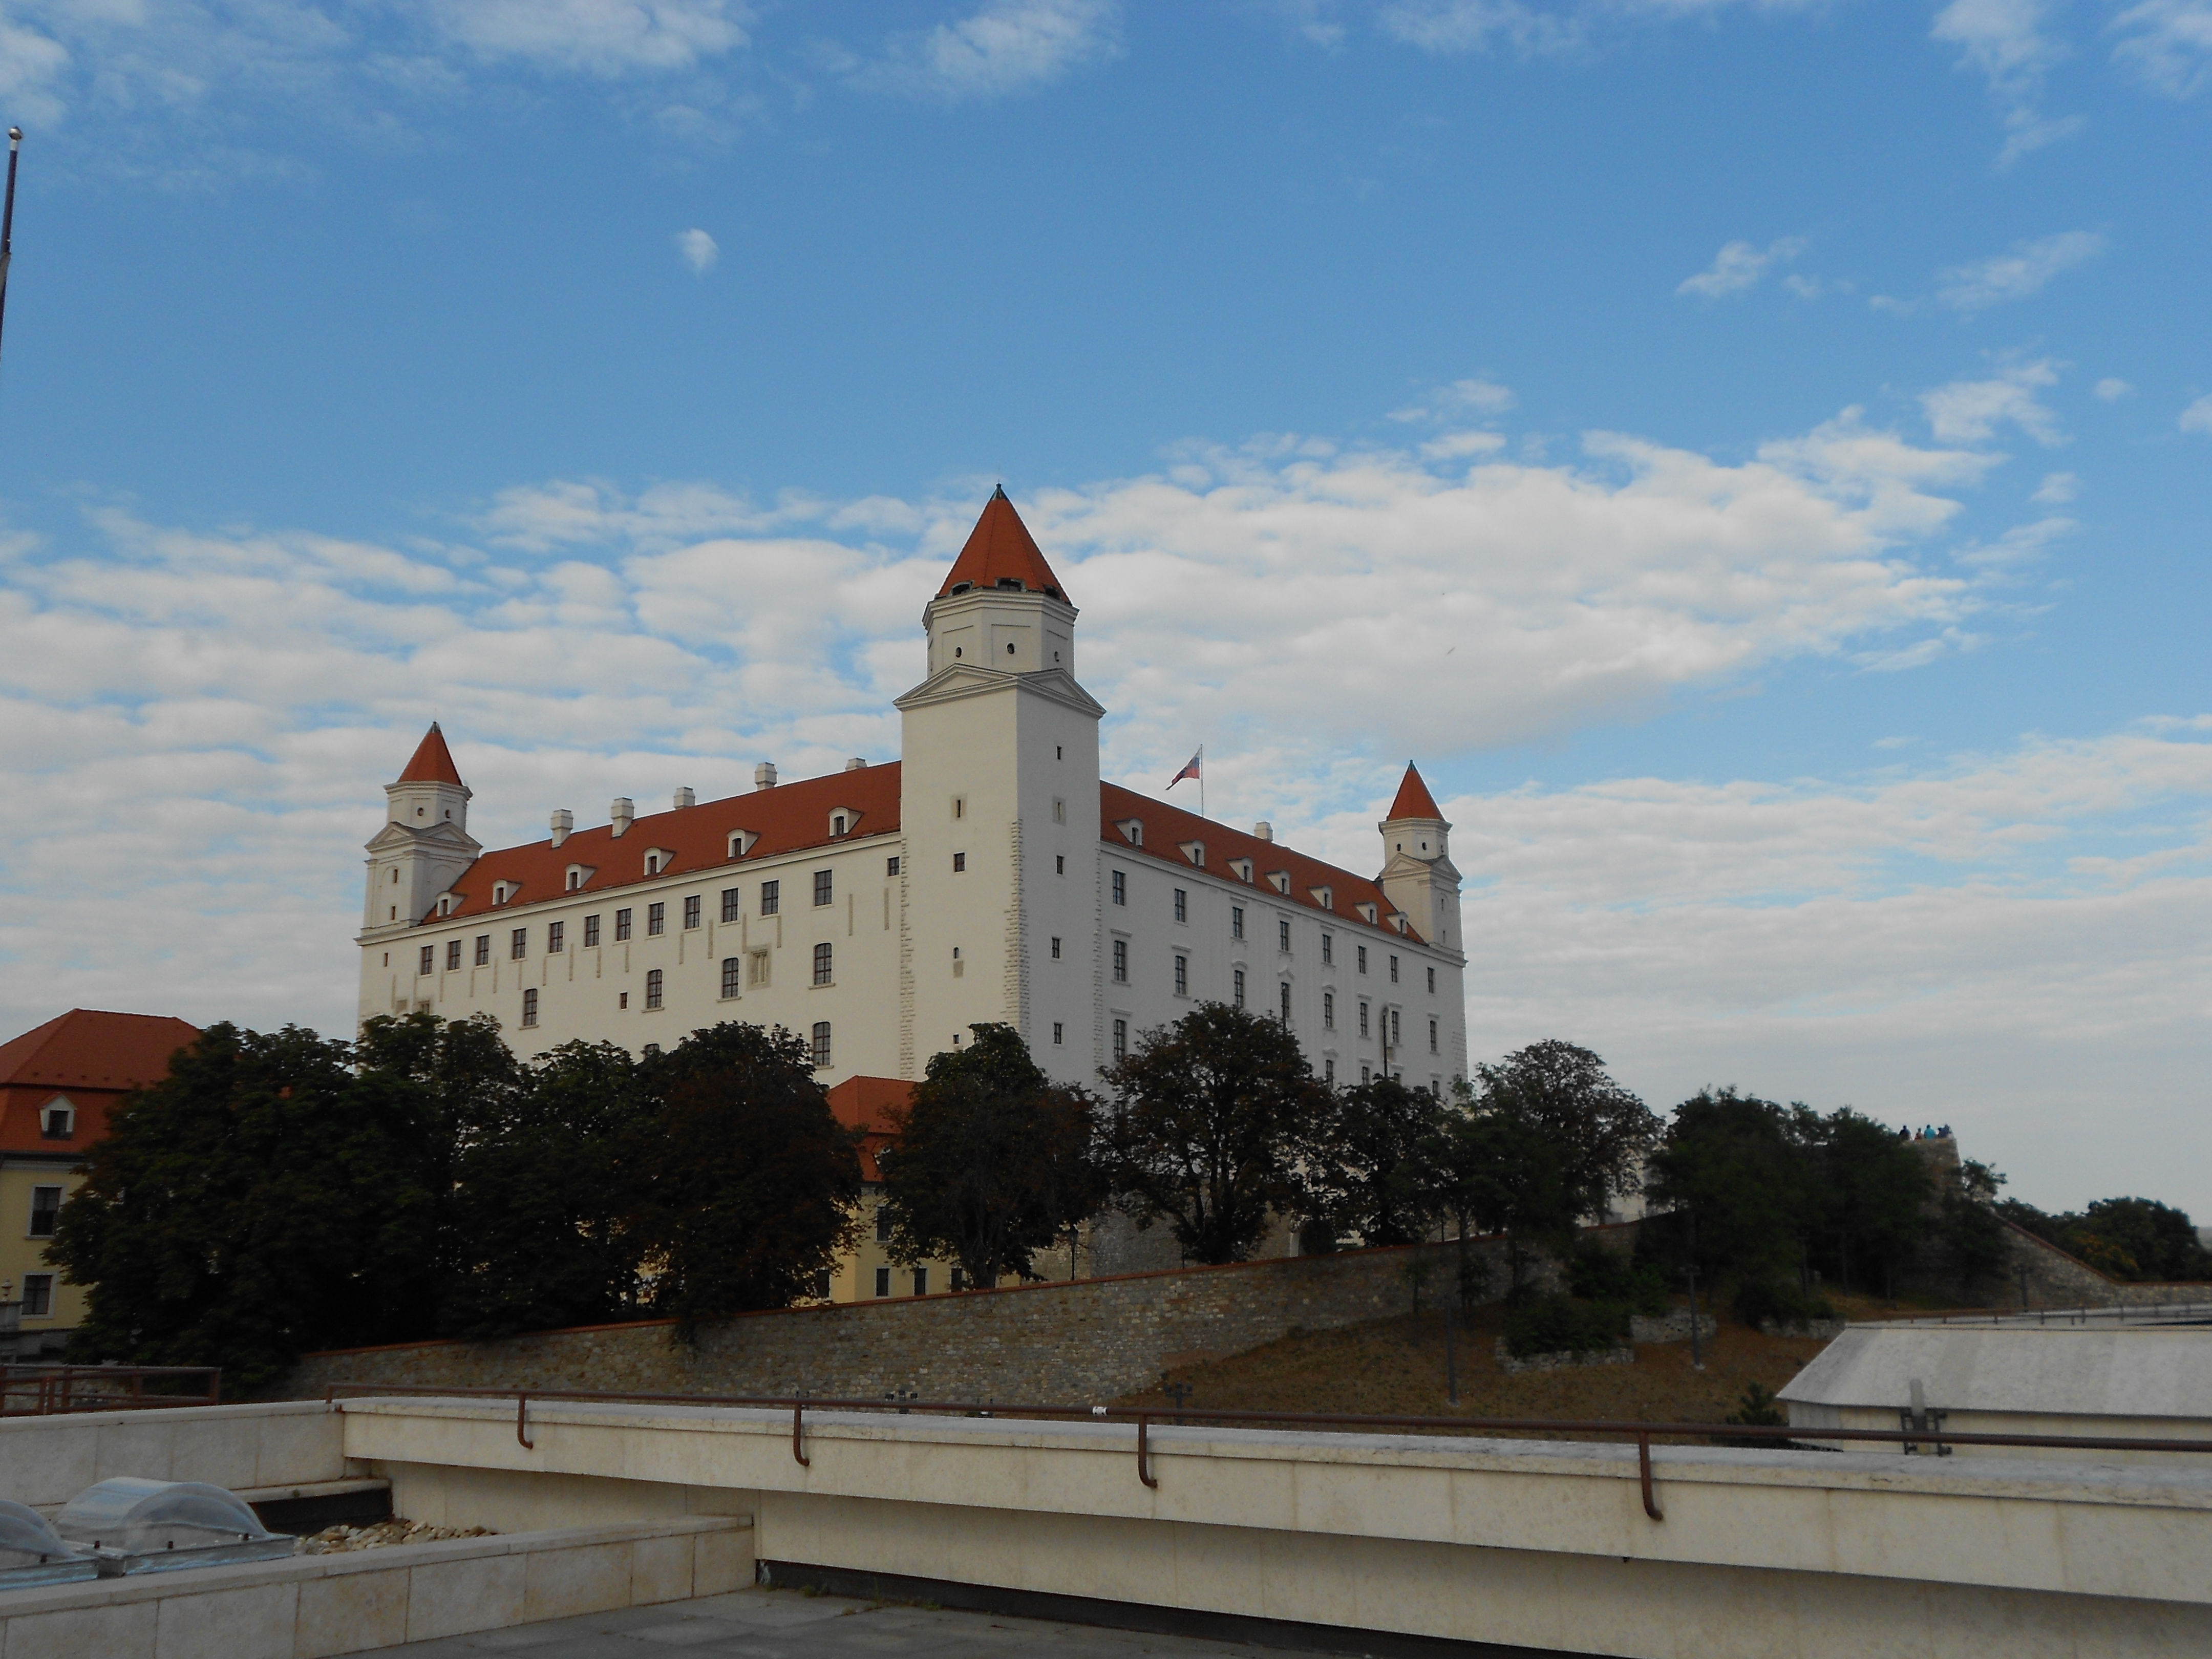 Bratislavsky hrad, hrad v dialke